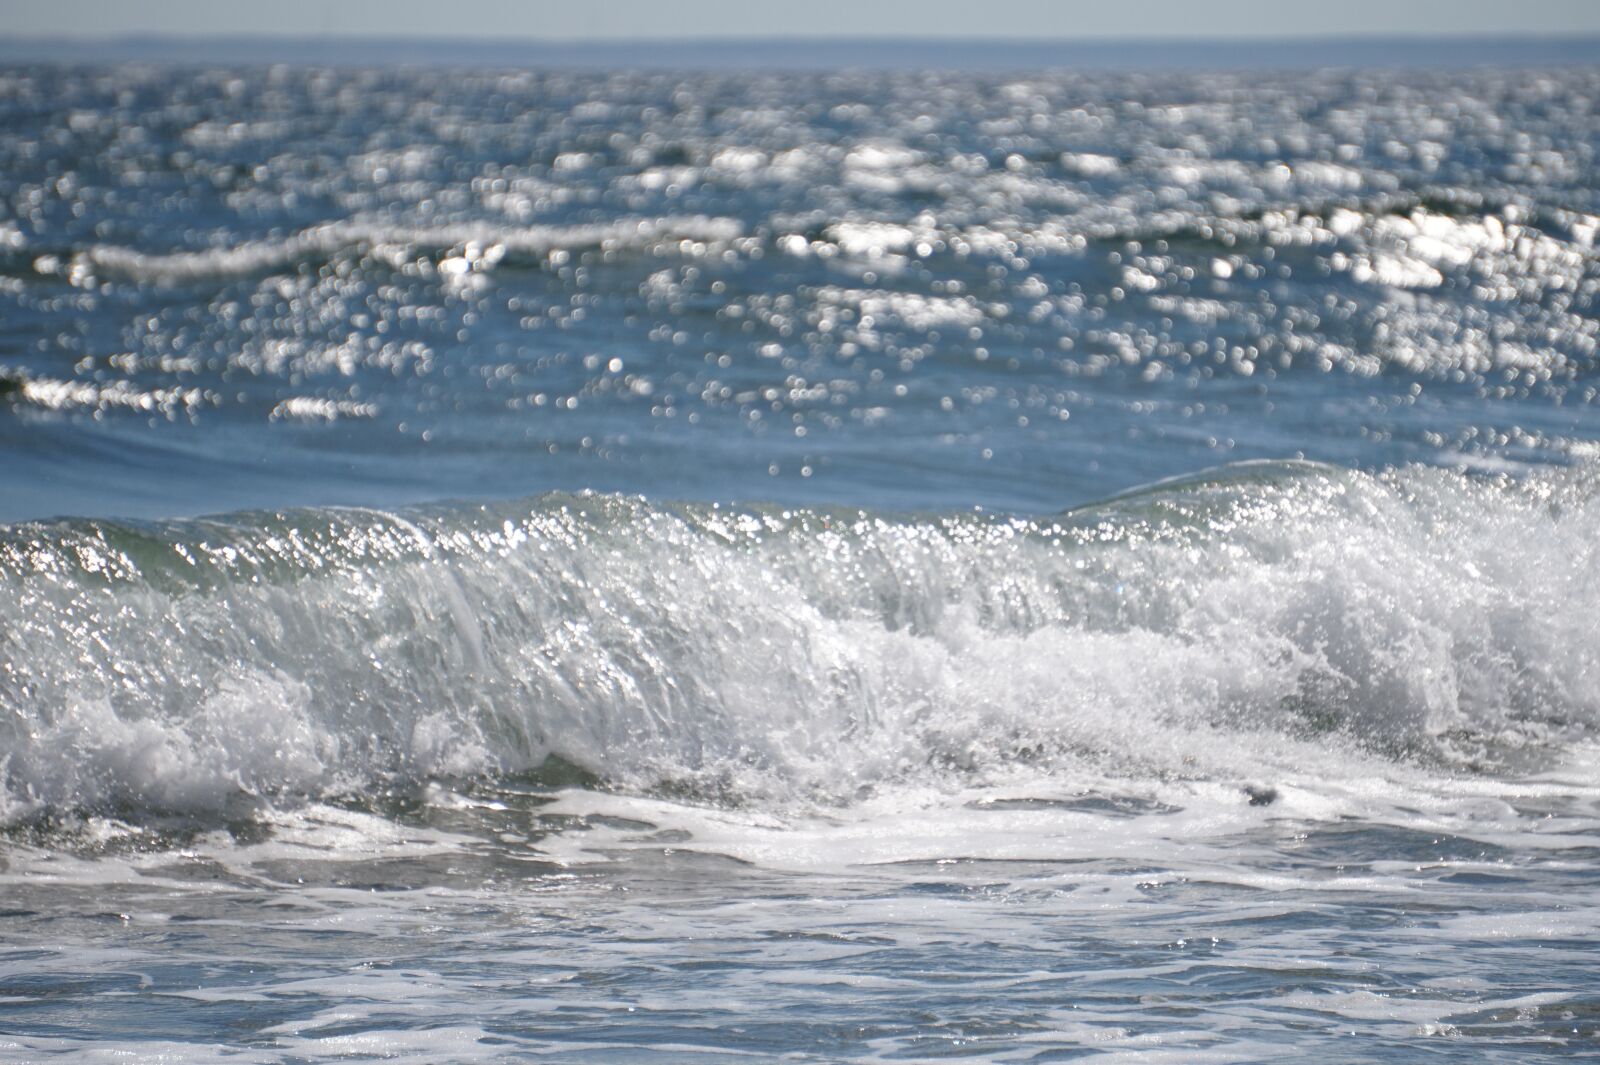 Sony Alpha a5000 (ILCE 5000) sample photo. Waves, beach, ocean photography